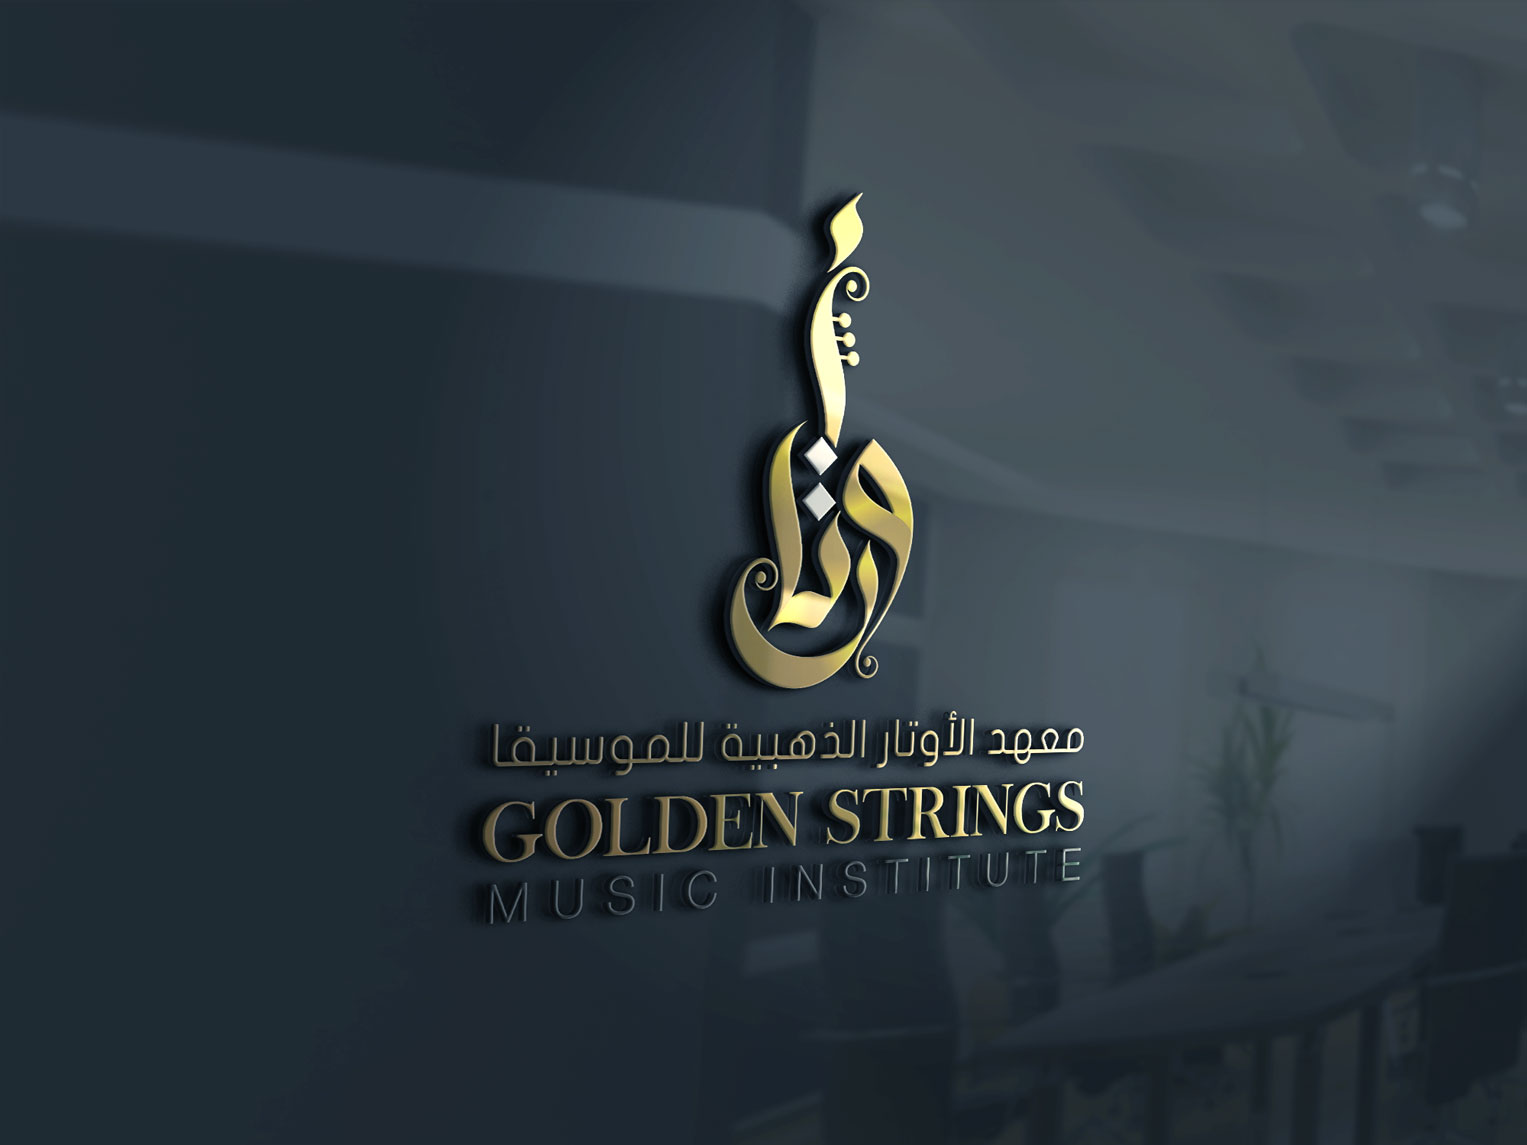 Golden Strings Music Institute